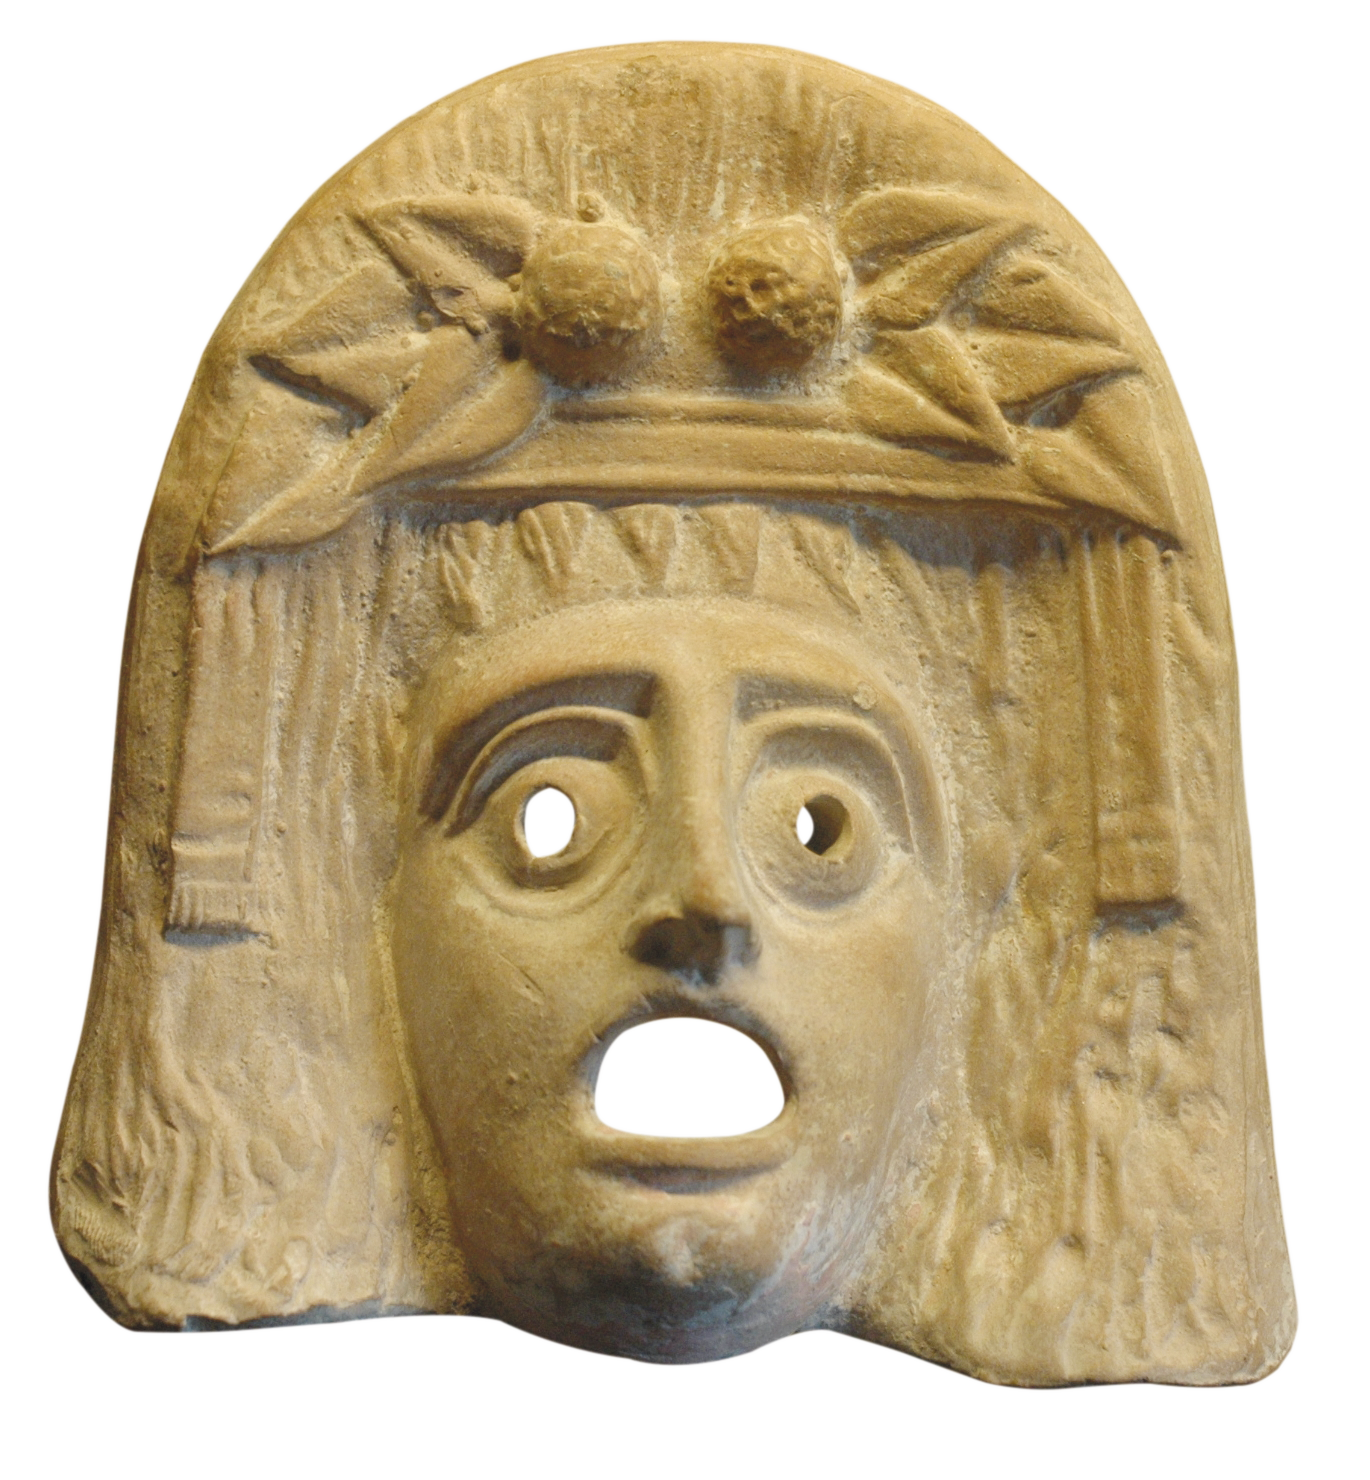 Fotografia. Máscara de pedra de figura mitológica. No alto, adornando a testa, há uma coroa de folhas e frutos. Há buracos para os olhos, que são representados arregalados, e para a boca, representada bem aberta.